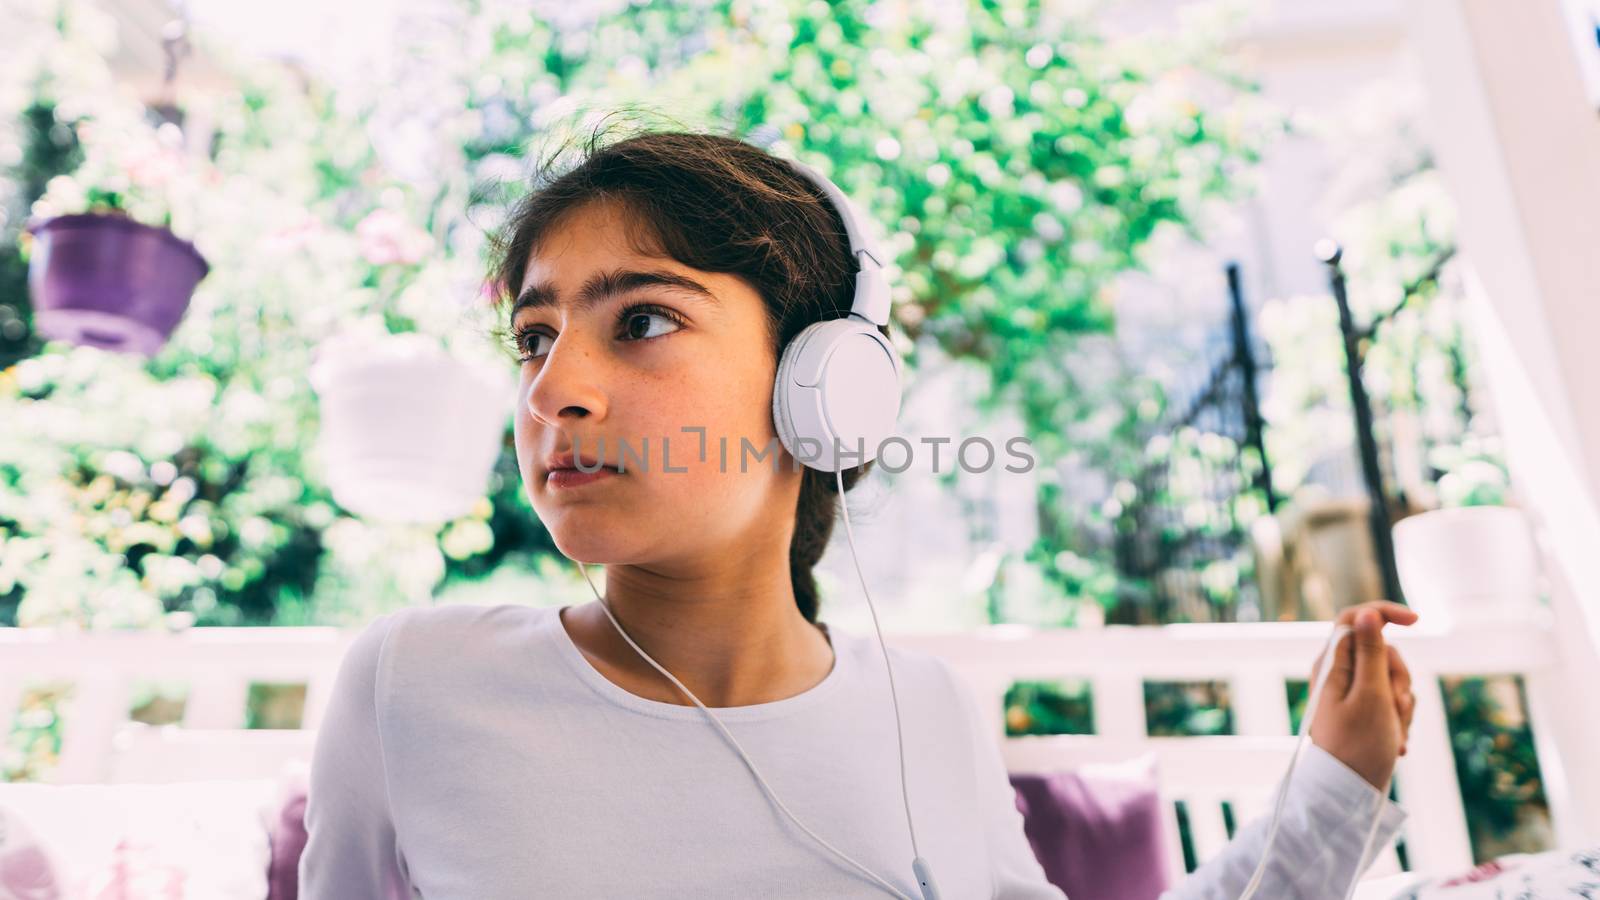 She seats outside in the garden, wearing headphones.